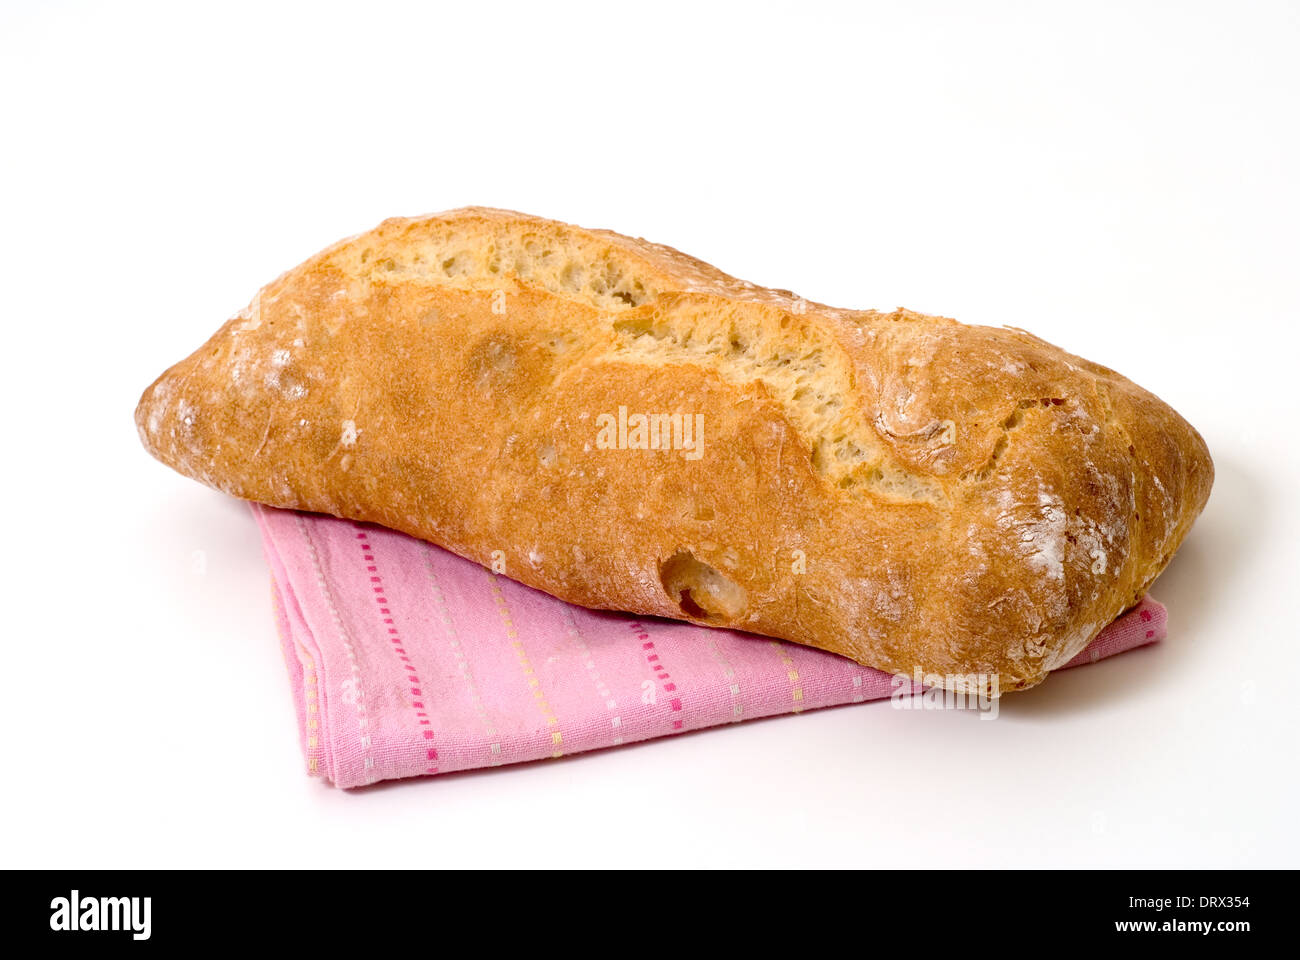 Freshly baked Sourdough bread. Stock Photo